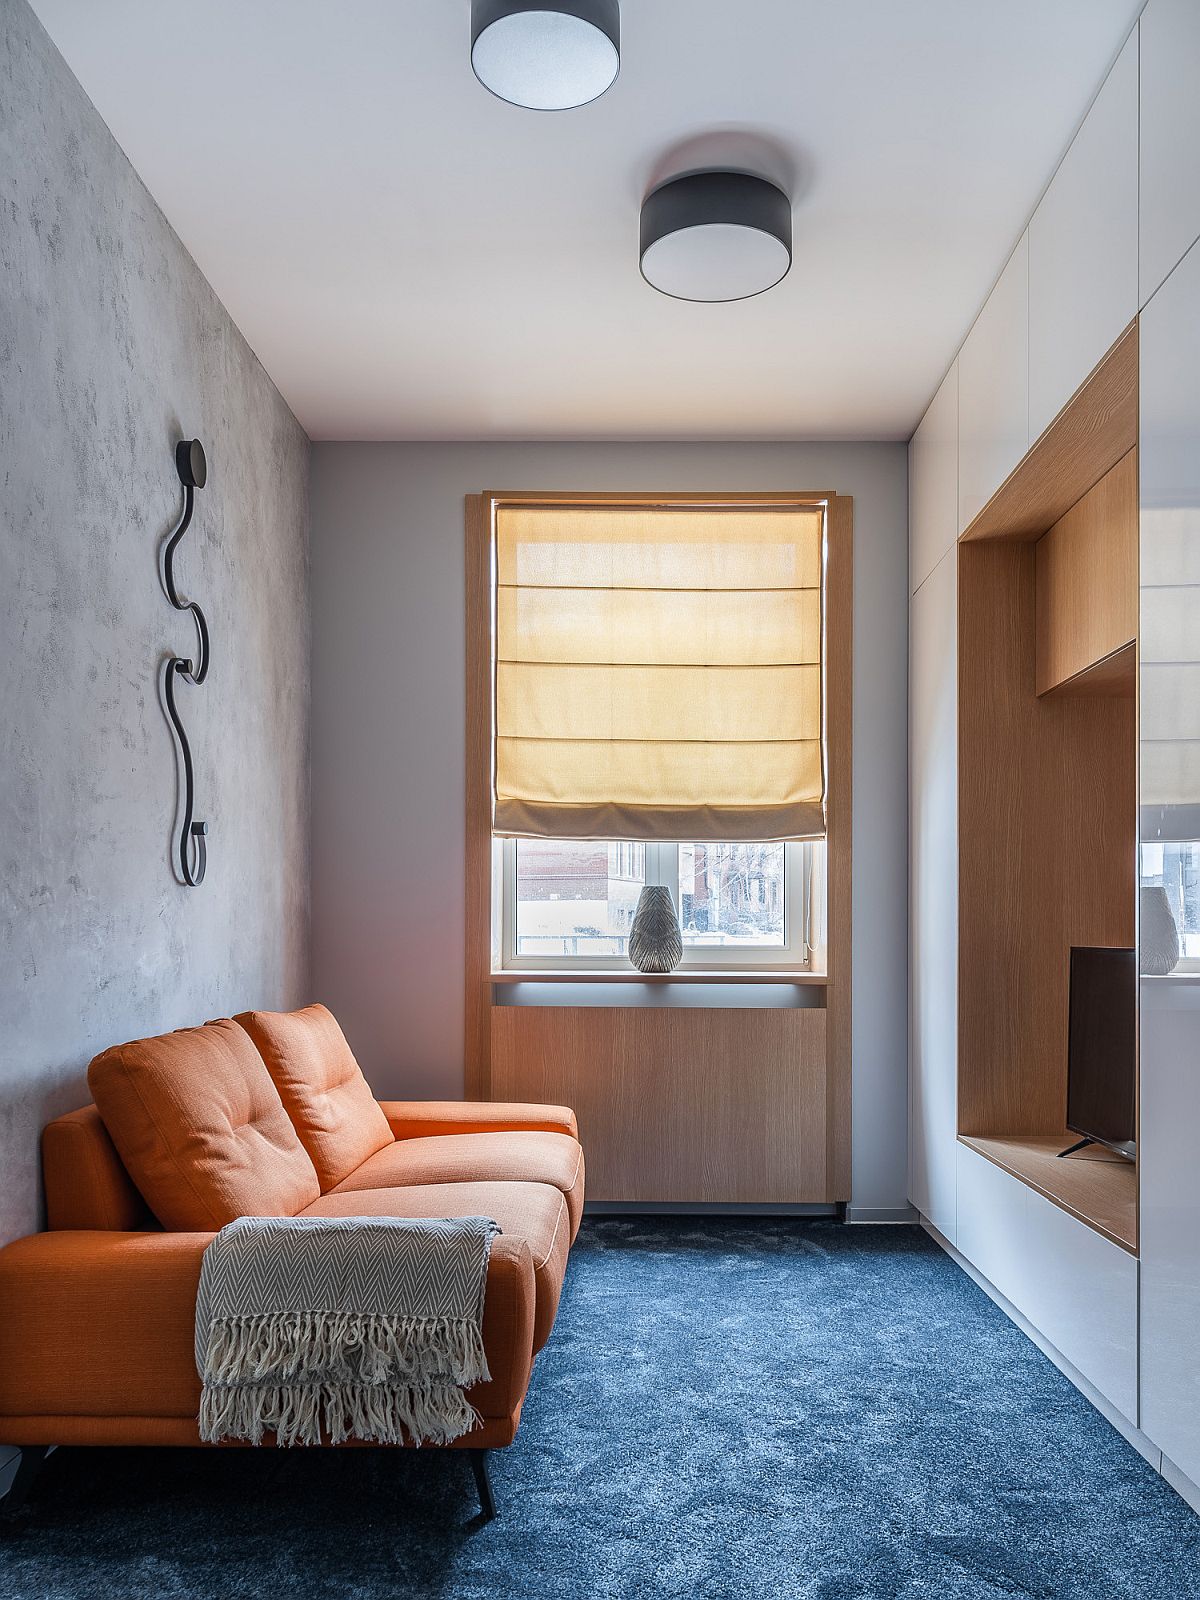 Loại bỏ chiếc bàn nước, phòng khách nhỏ nhắn này chỉ sử dụng duy nhất chiếc sofa da màu cam gạch nổi bật trên nền thảm xanh dương đậm và bức tường xám cho cái nhìn vừa rực rỡ vừa trung tính. 